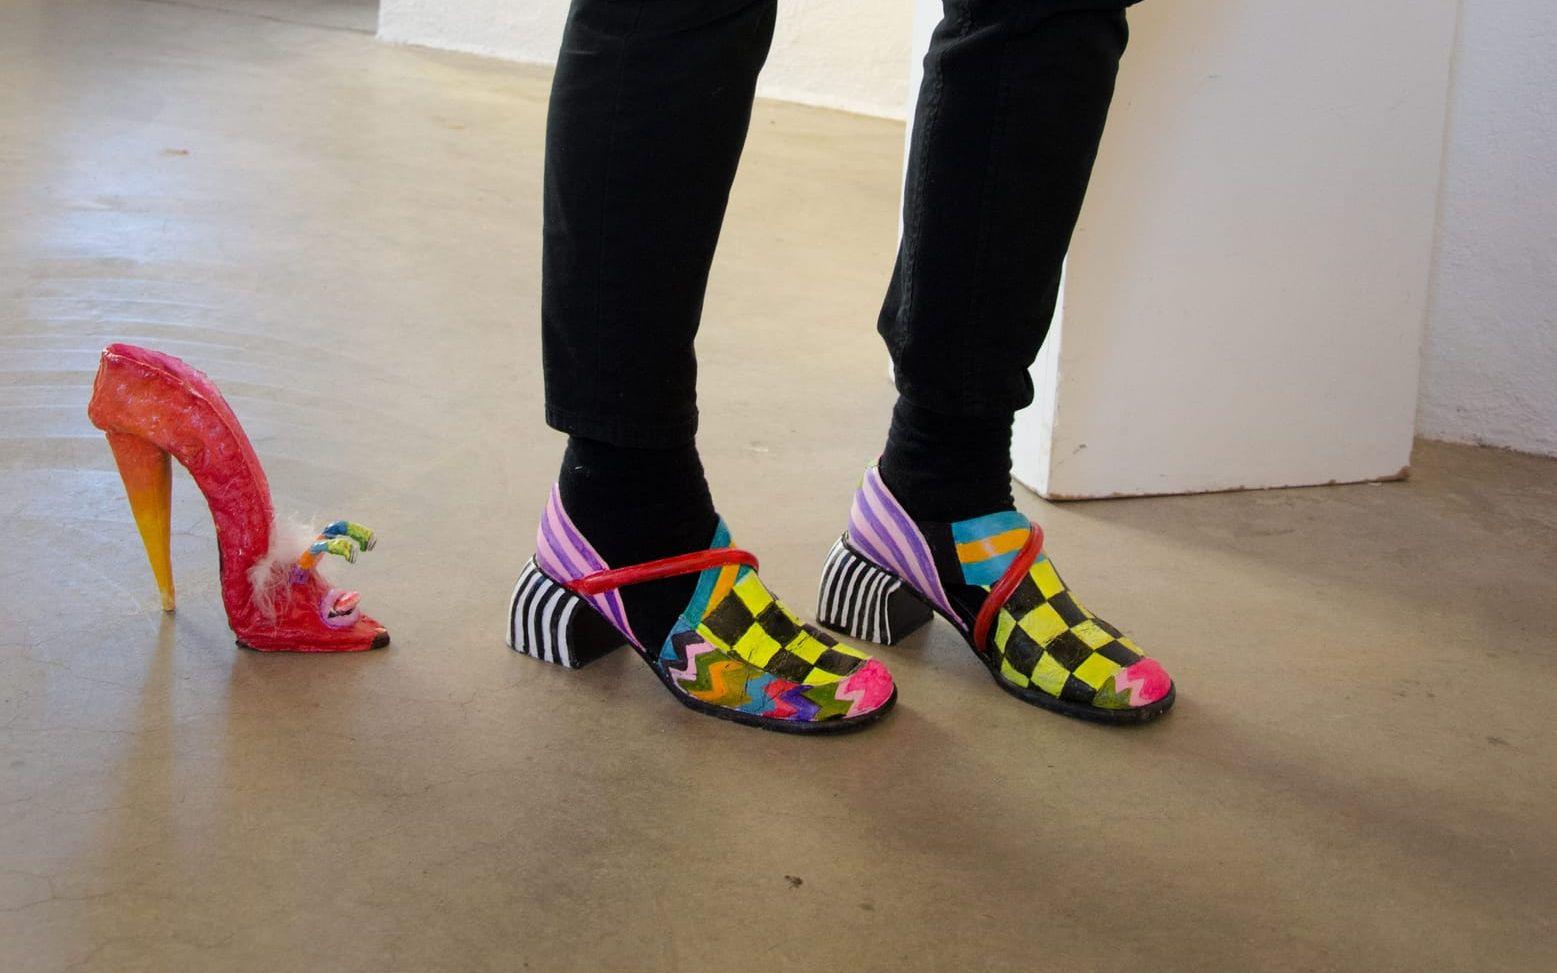 Inför utställningen bestämde Anna-Lena Emdén sig för att pimpa sina skor med glada färger och mönster.